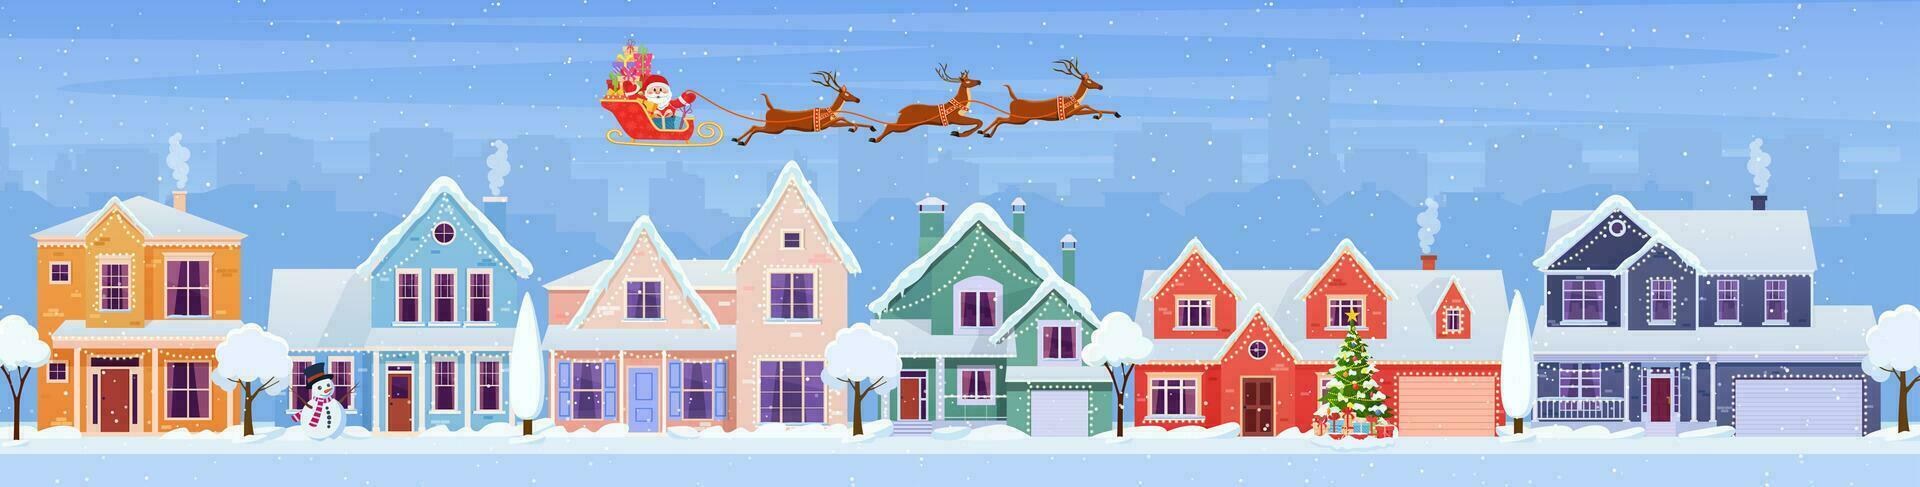 Residenziale case con Natale decorazione a giorno. cartone animato inverno paesaggio strada con neve su tetti e vacanza ghirlande, Natale albero, pupazzo di neve. Santa Claus con Cervi nel cielo vettore illustrazione